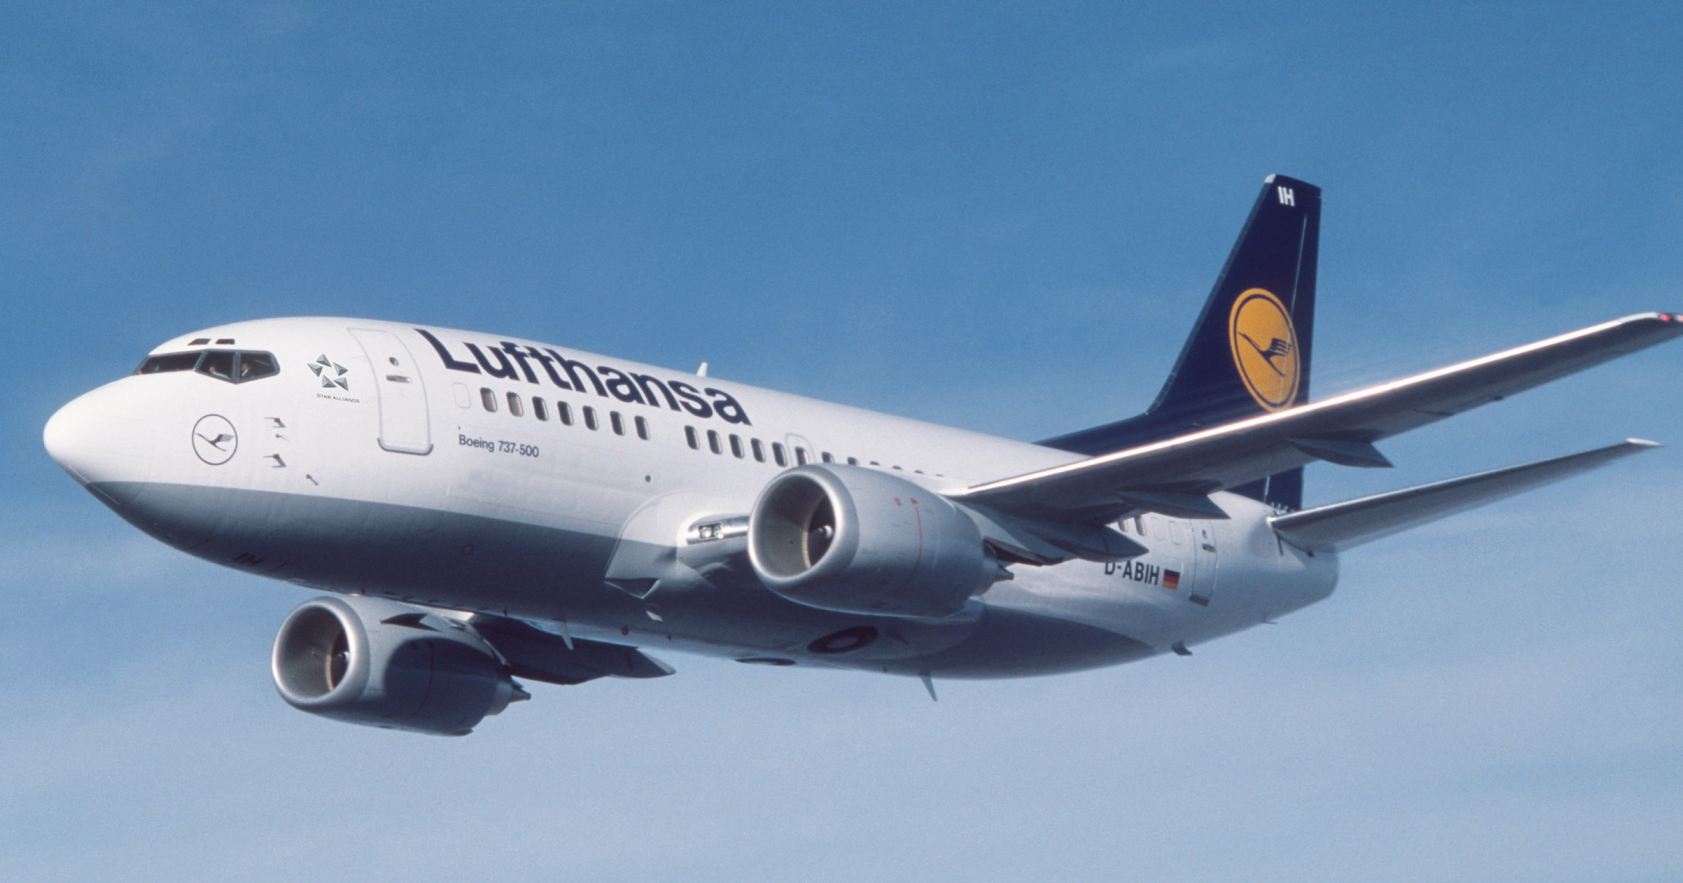 A legkisebb 737-esek más társaságoknál is gazdaságtalannak bizonyultak <br>(fotók: Lufthansa)